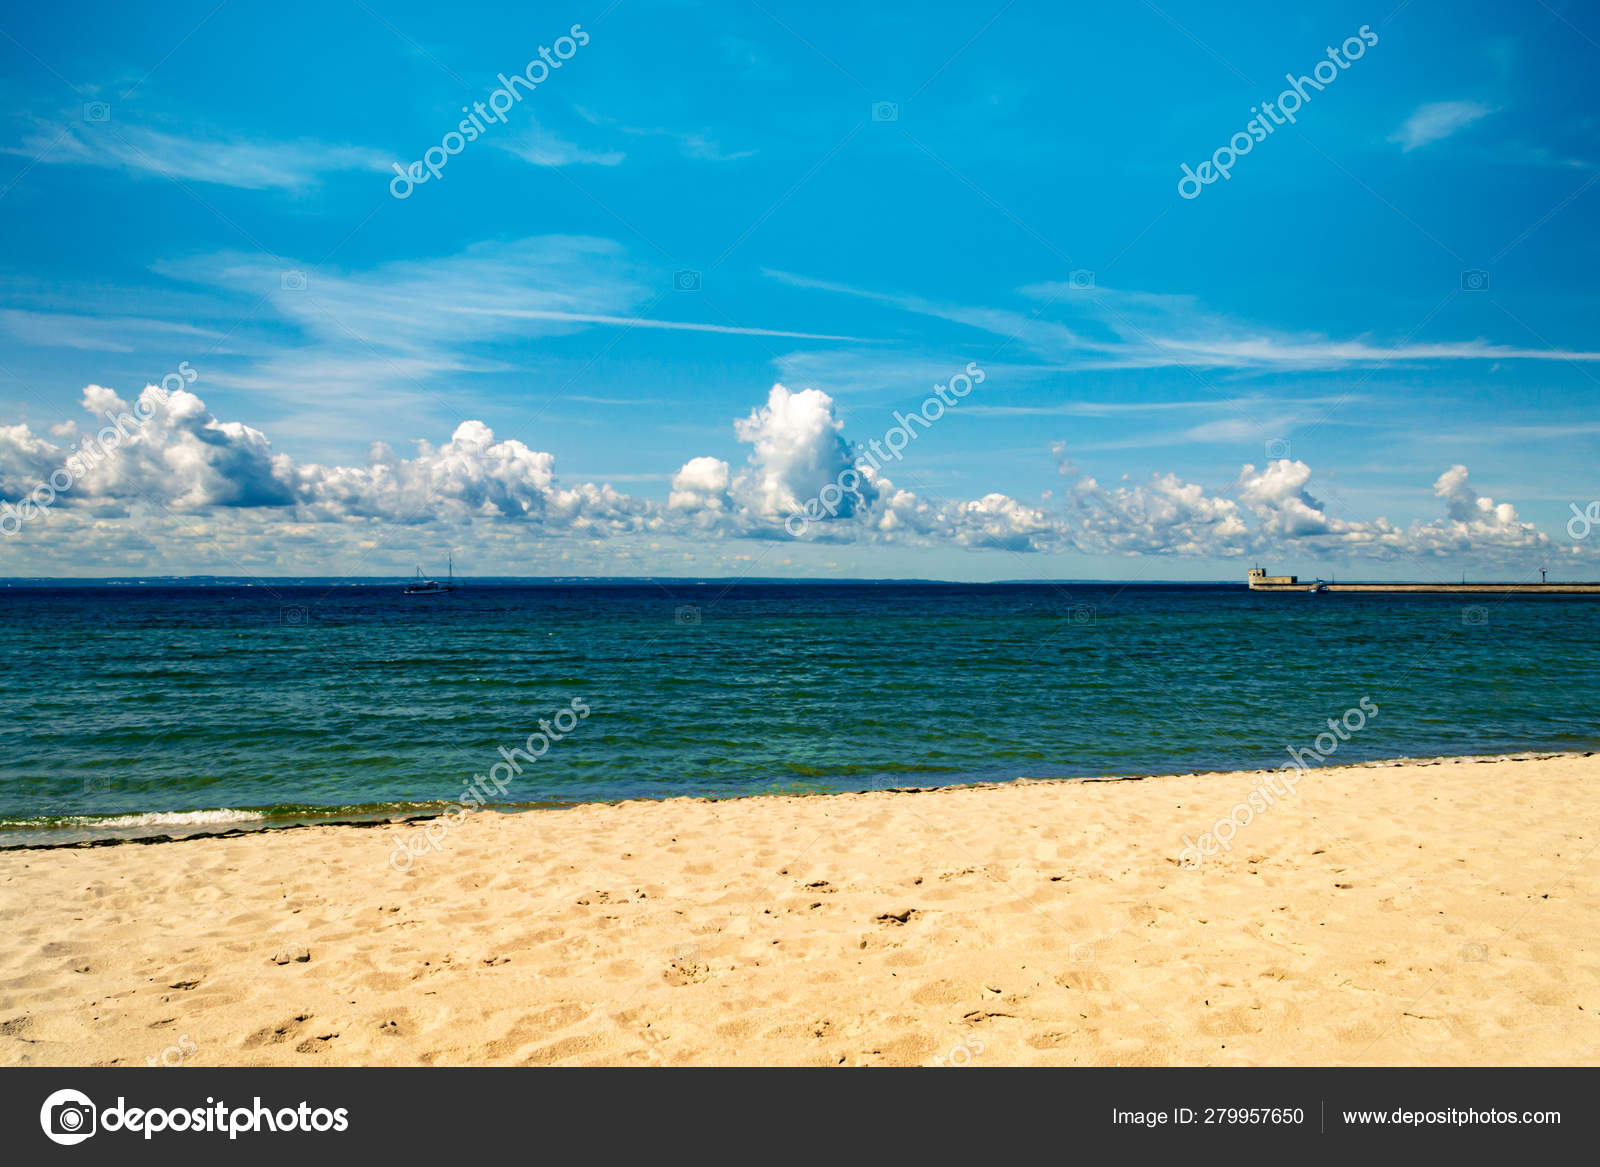 青い空と美しい熱帯のビーチと海 無料のストック写真 C Maksymkapliuk